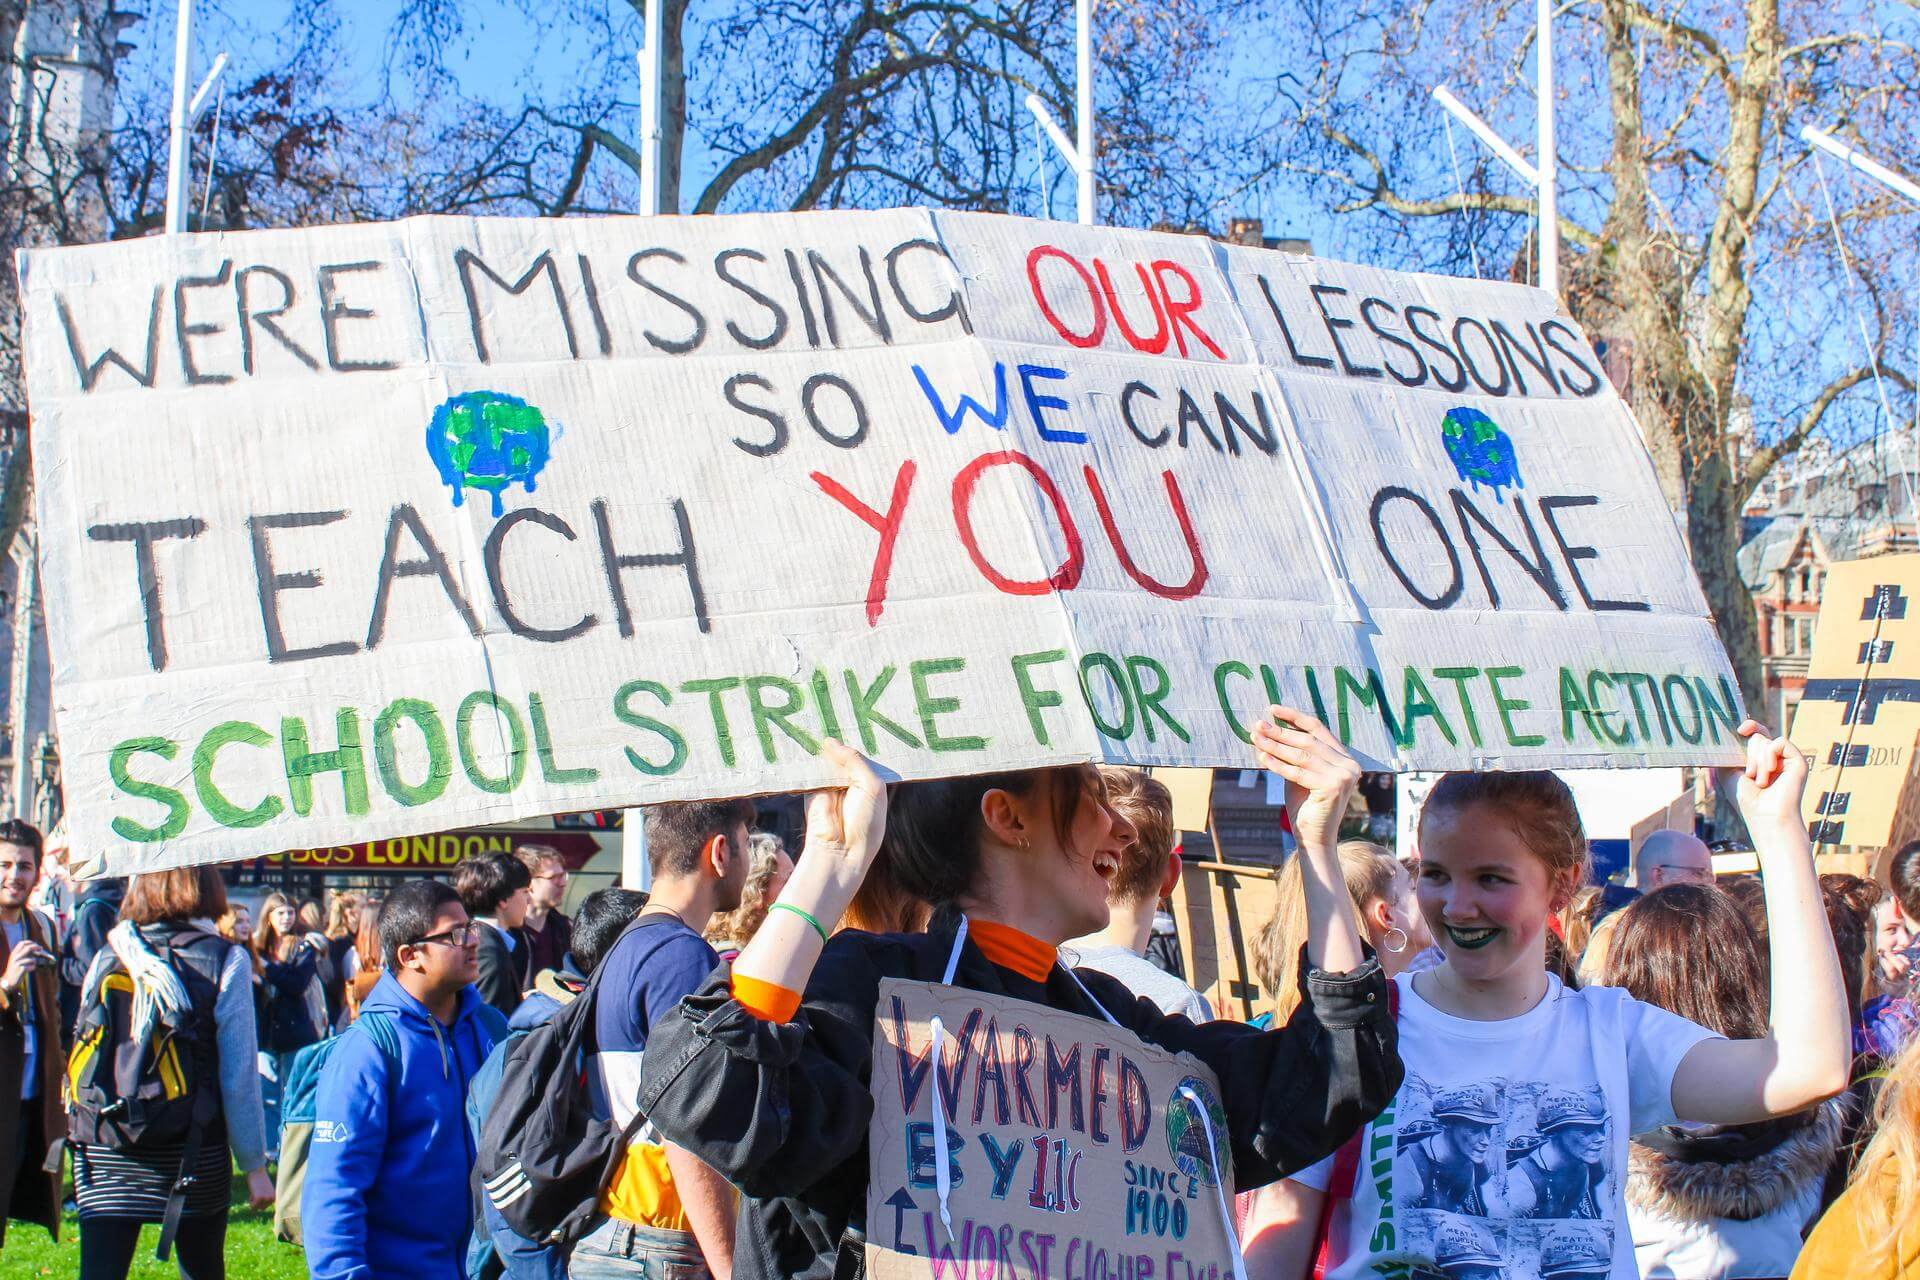 Młodzieżowy Strajk Klimatyczny|słuchajcie naszych głosów|zmiana jest konieczna|potrzebujemy zmiany|nie ma innej planety